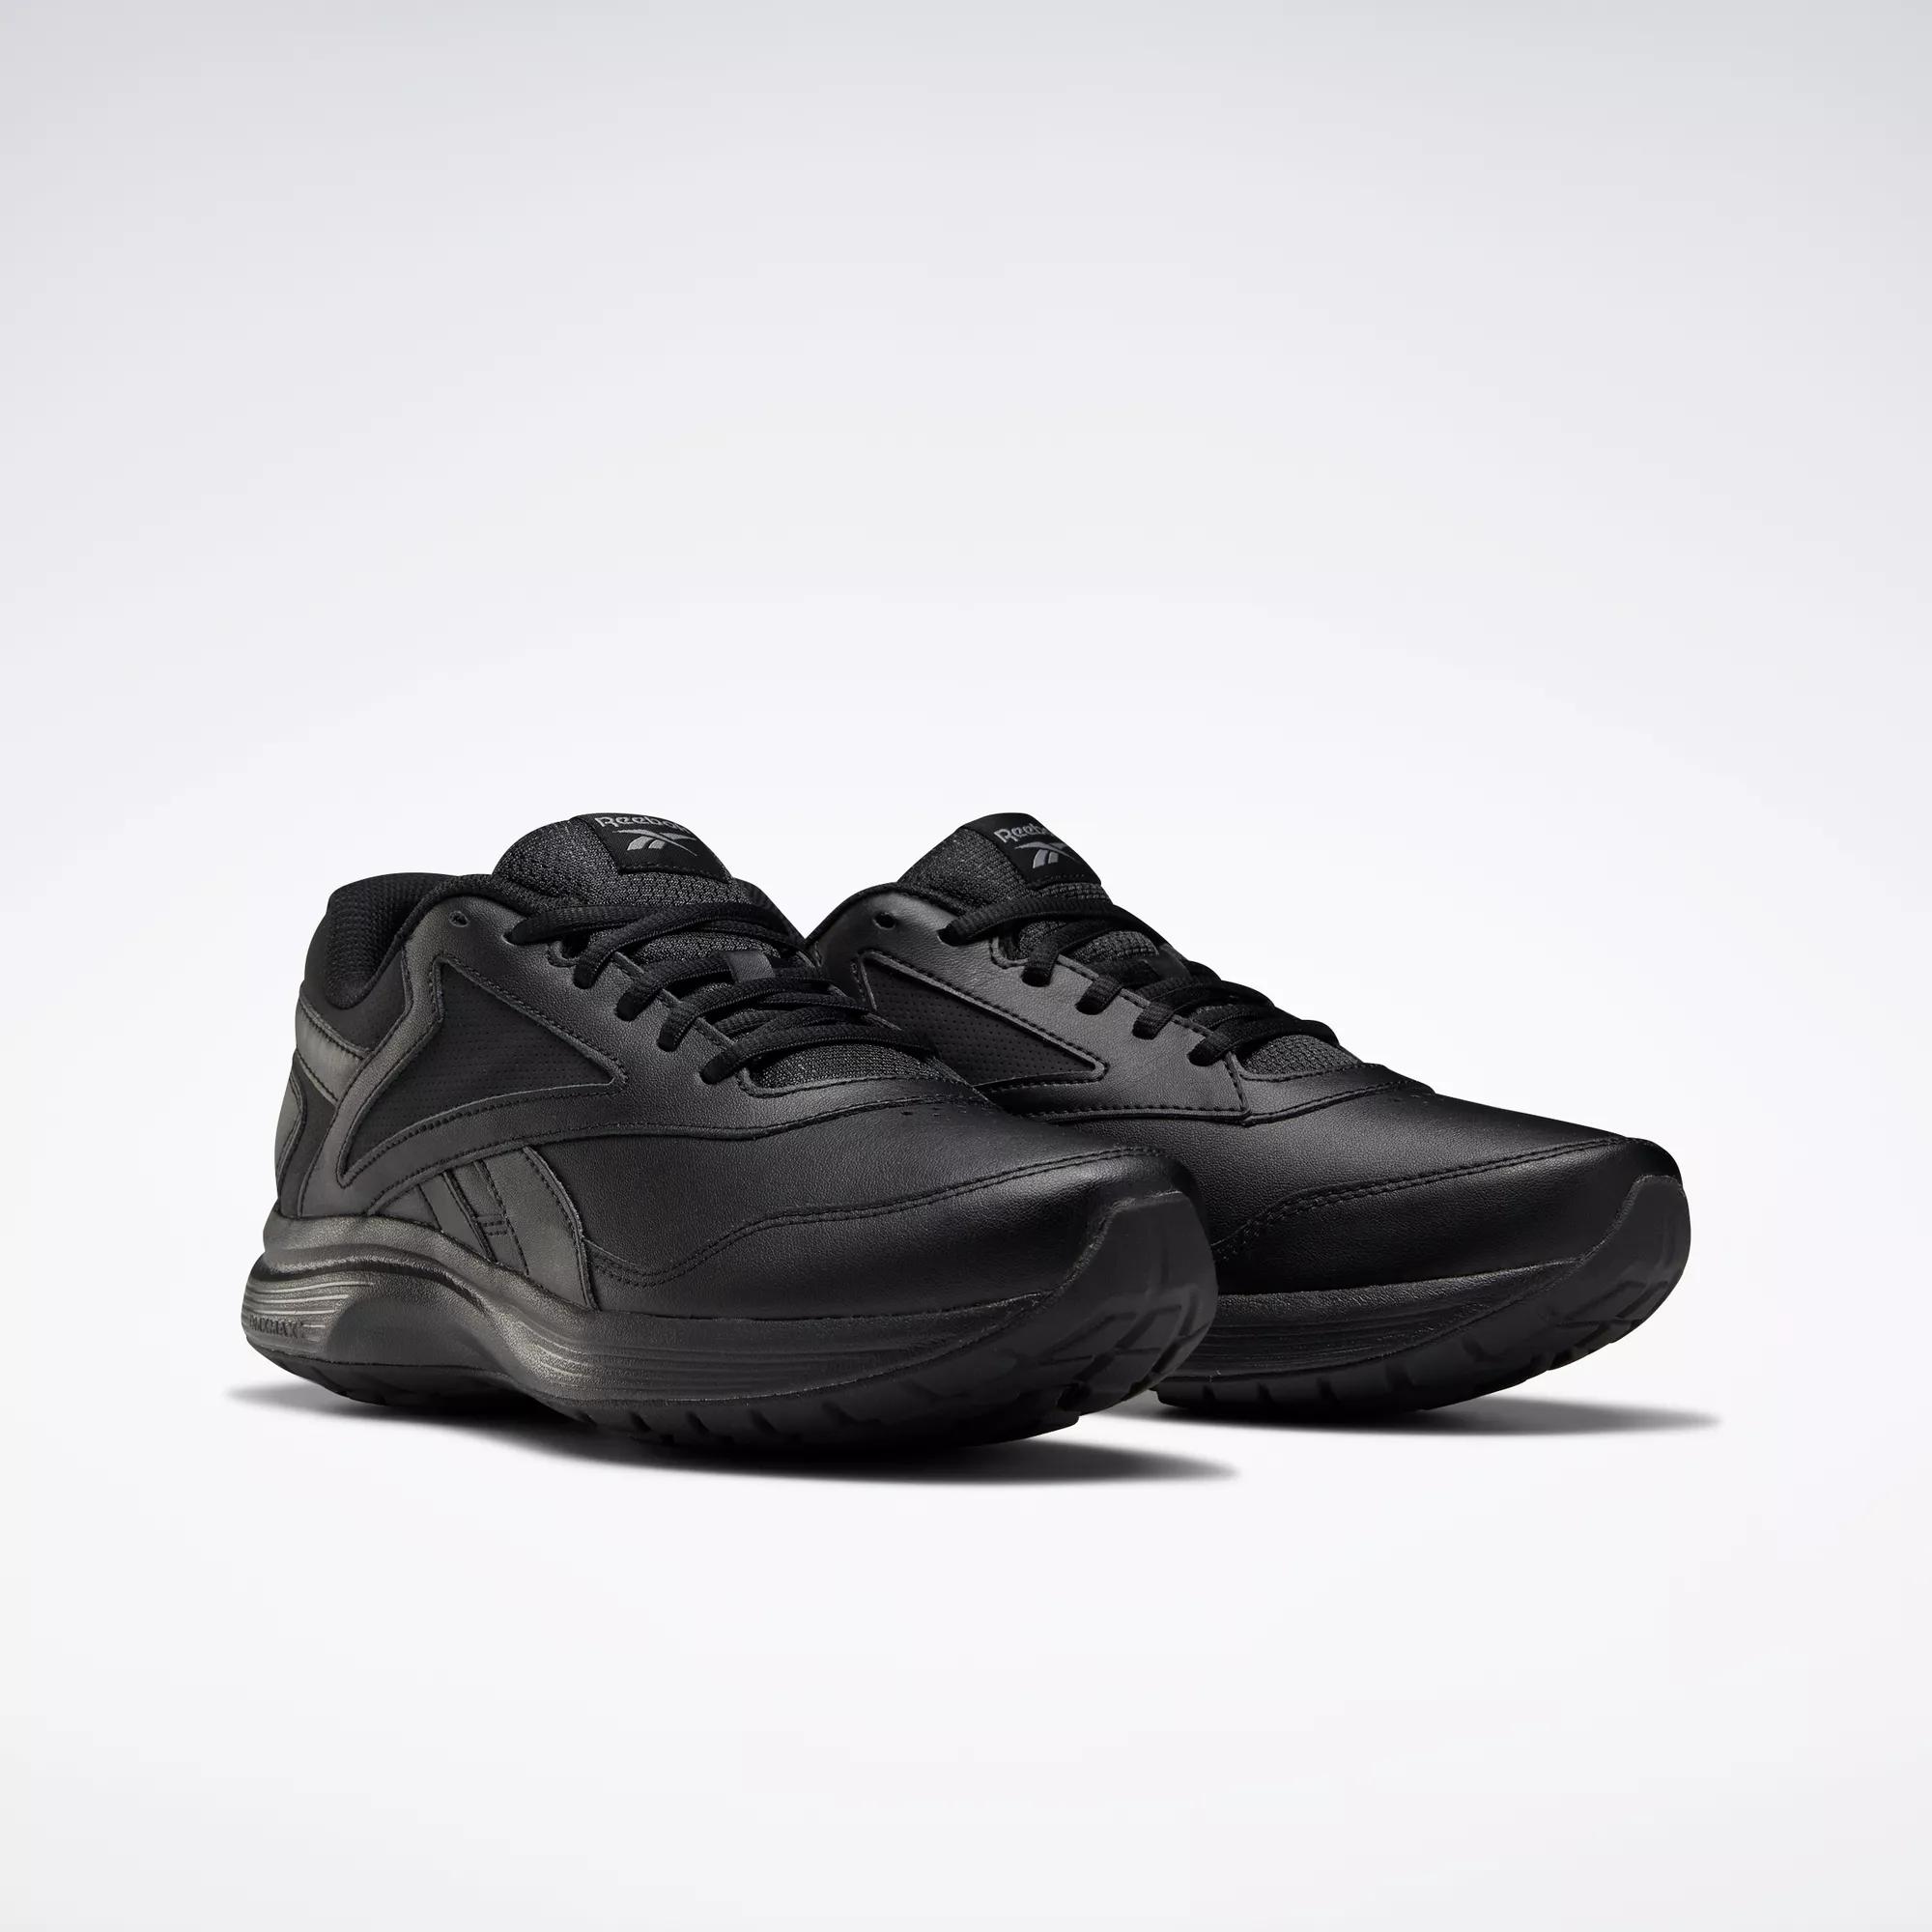 Donau Ernest Shackleton vorm Walk Ultra 7 DMX MAX Wide Men's Shoes - Black / Cold Grey / Collegiate  Royal | Reebok